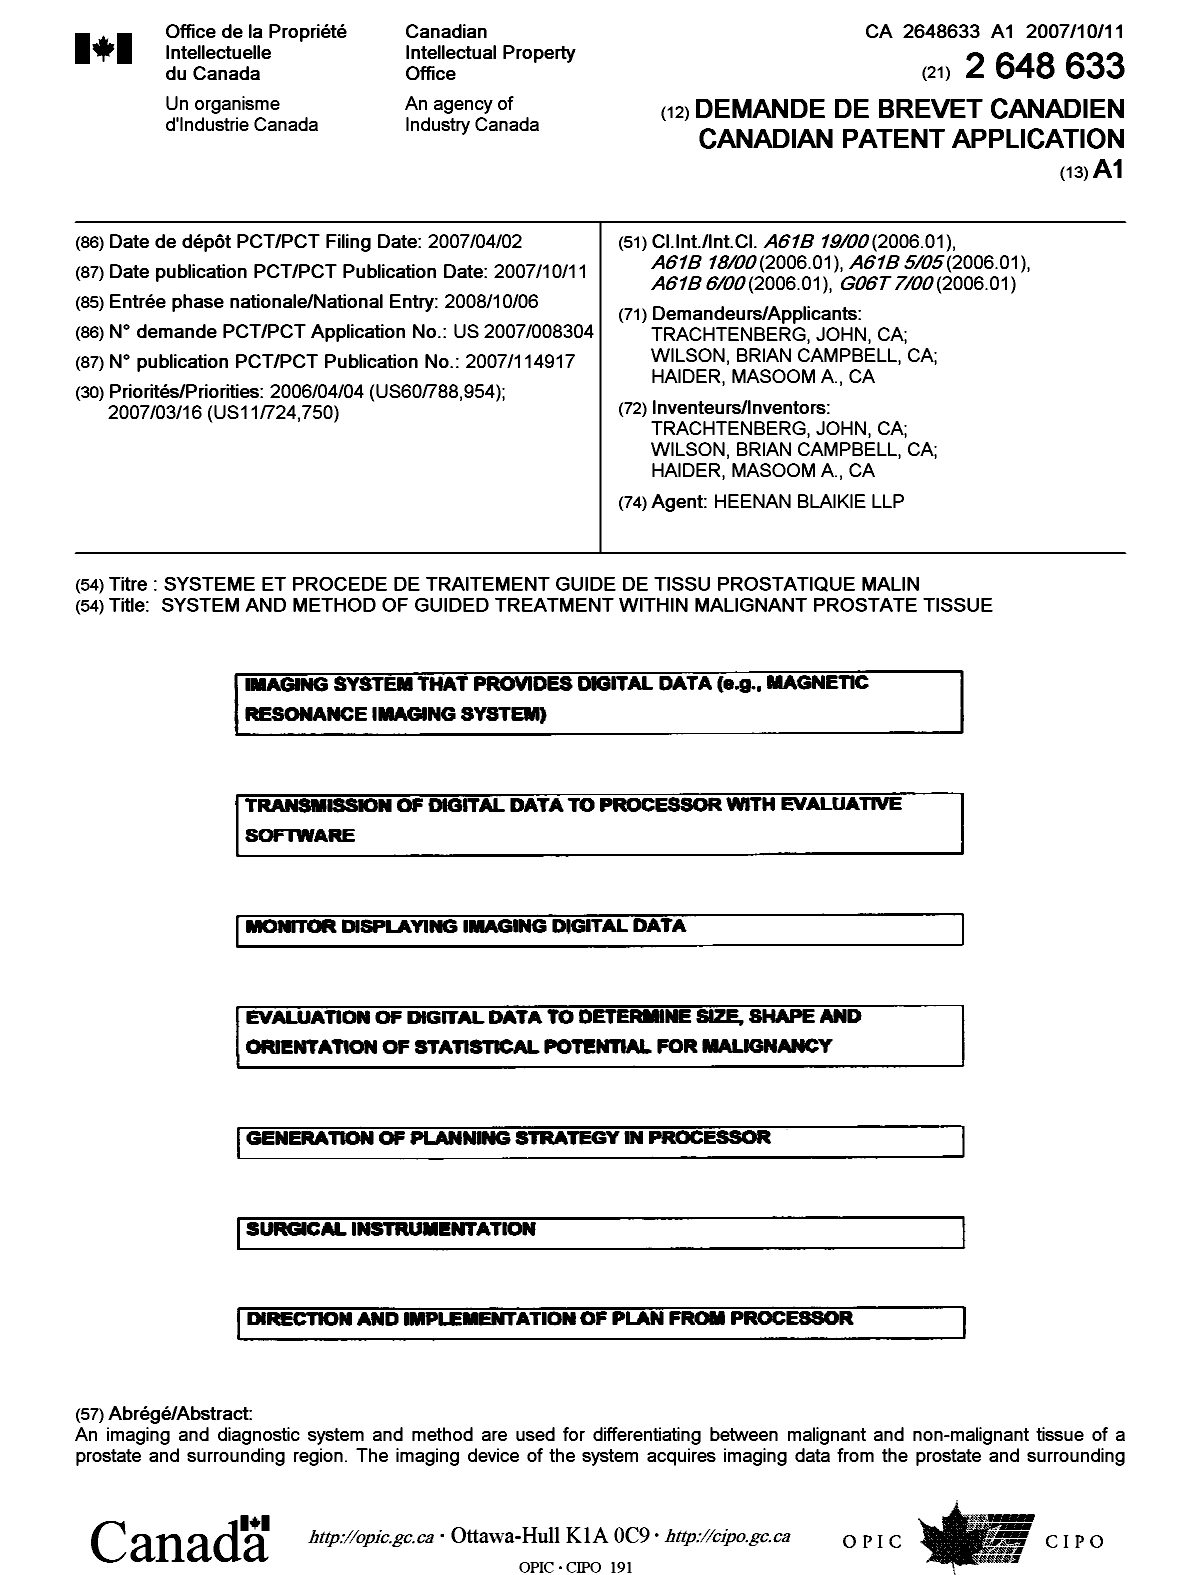 Document de brevet canadien 2648633. Page couverture 20090211. Image 1 de 2